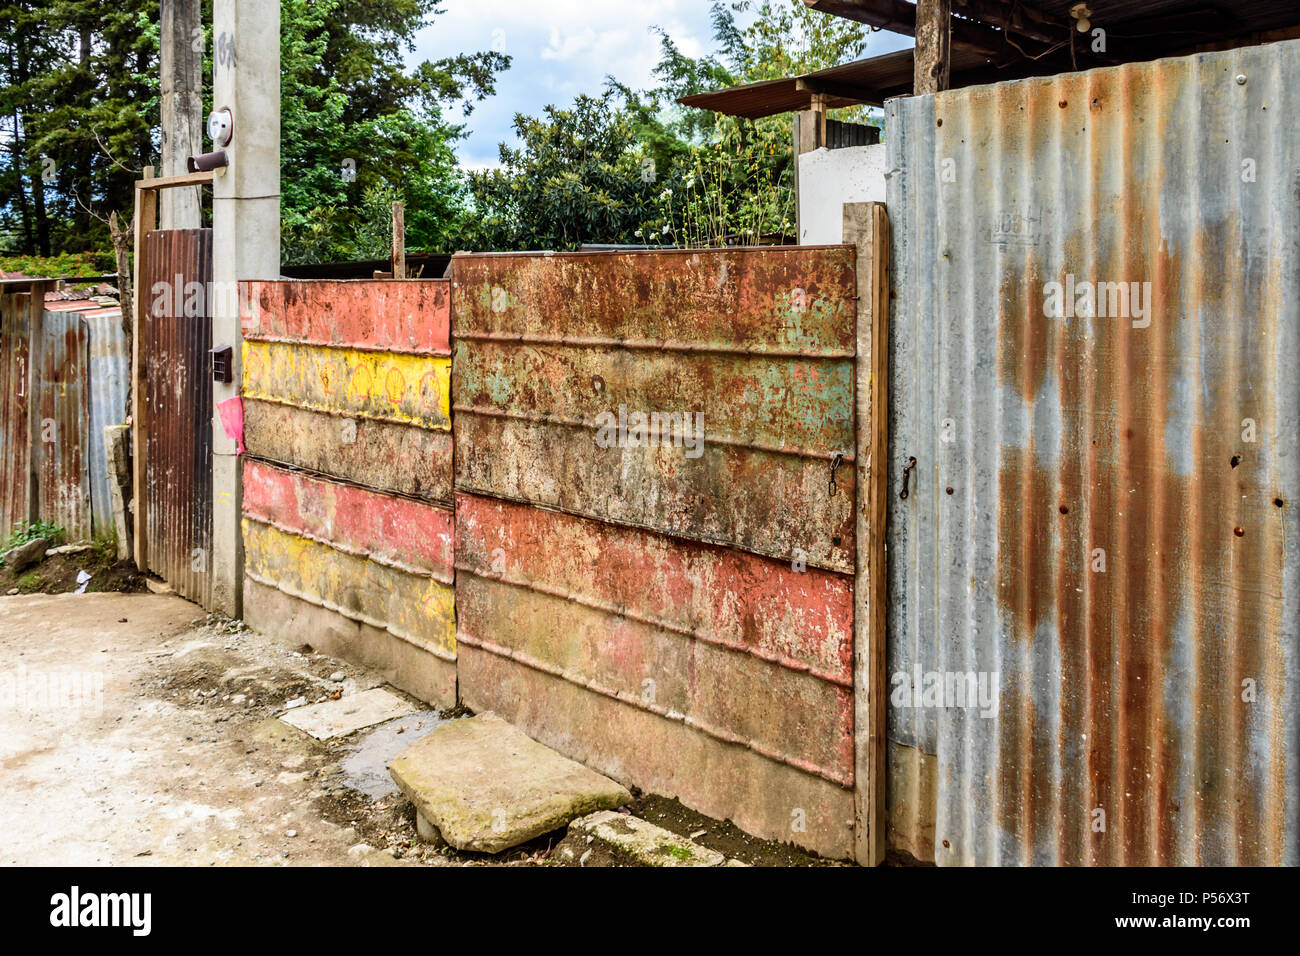 San Juan del Obispo, Guatemala - June 25, 2017: Corrugated iron fence in village near colonial town & UNESCO World Heritage Site of Antigua Stock Photo